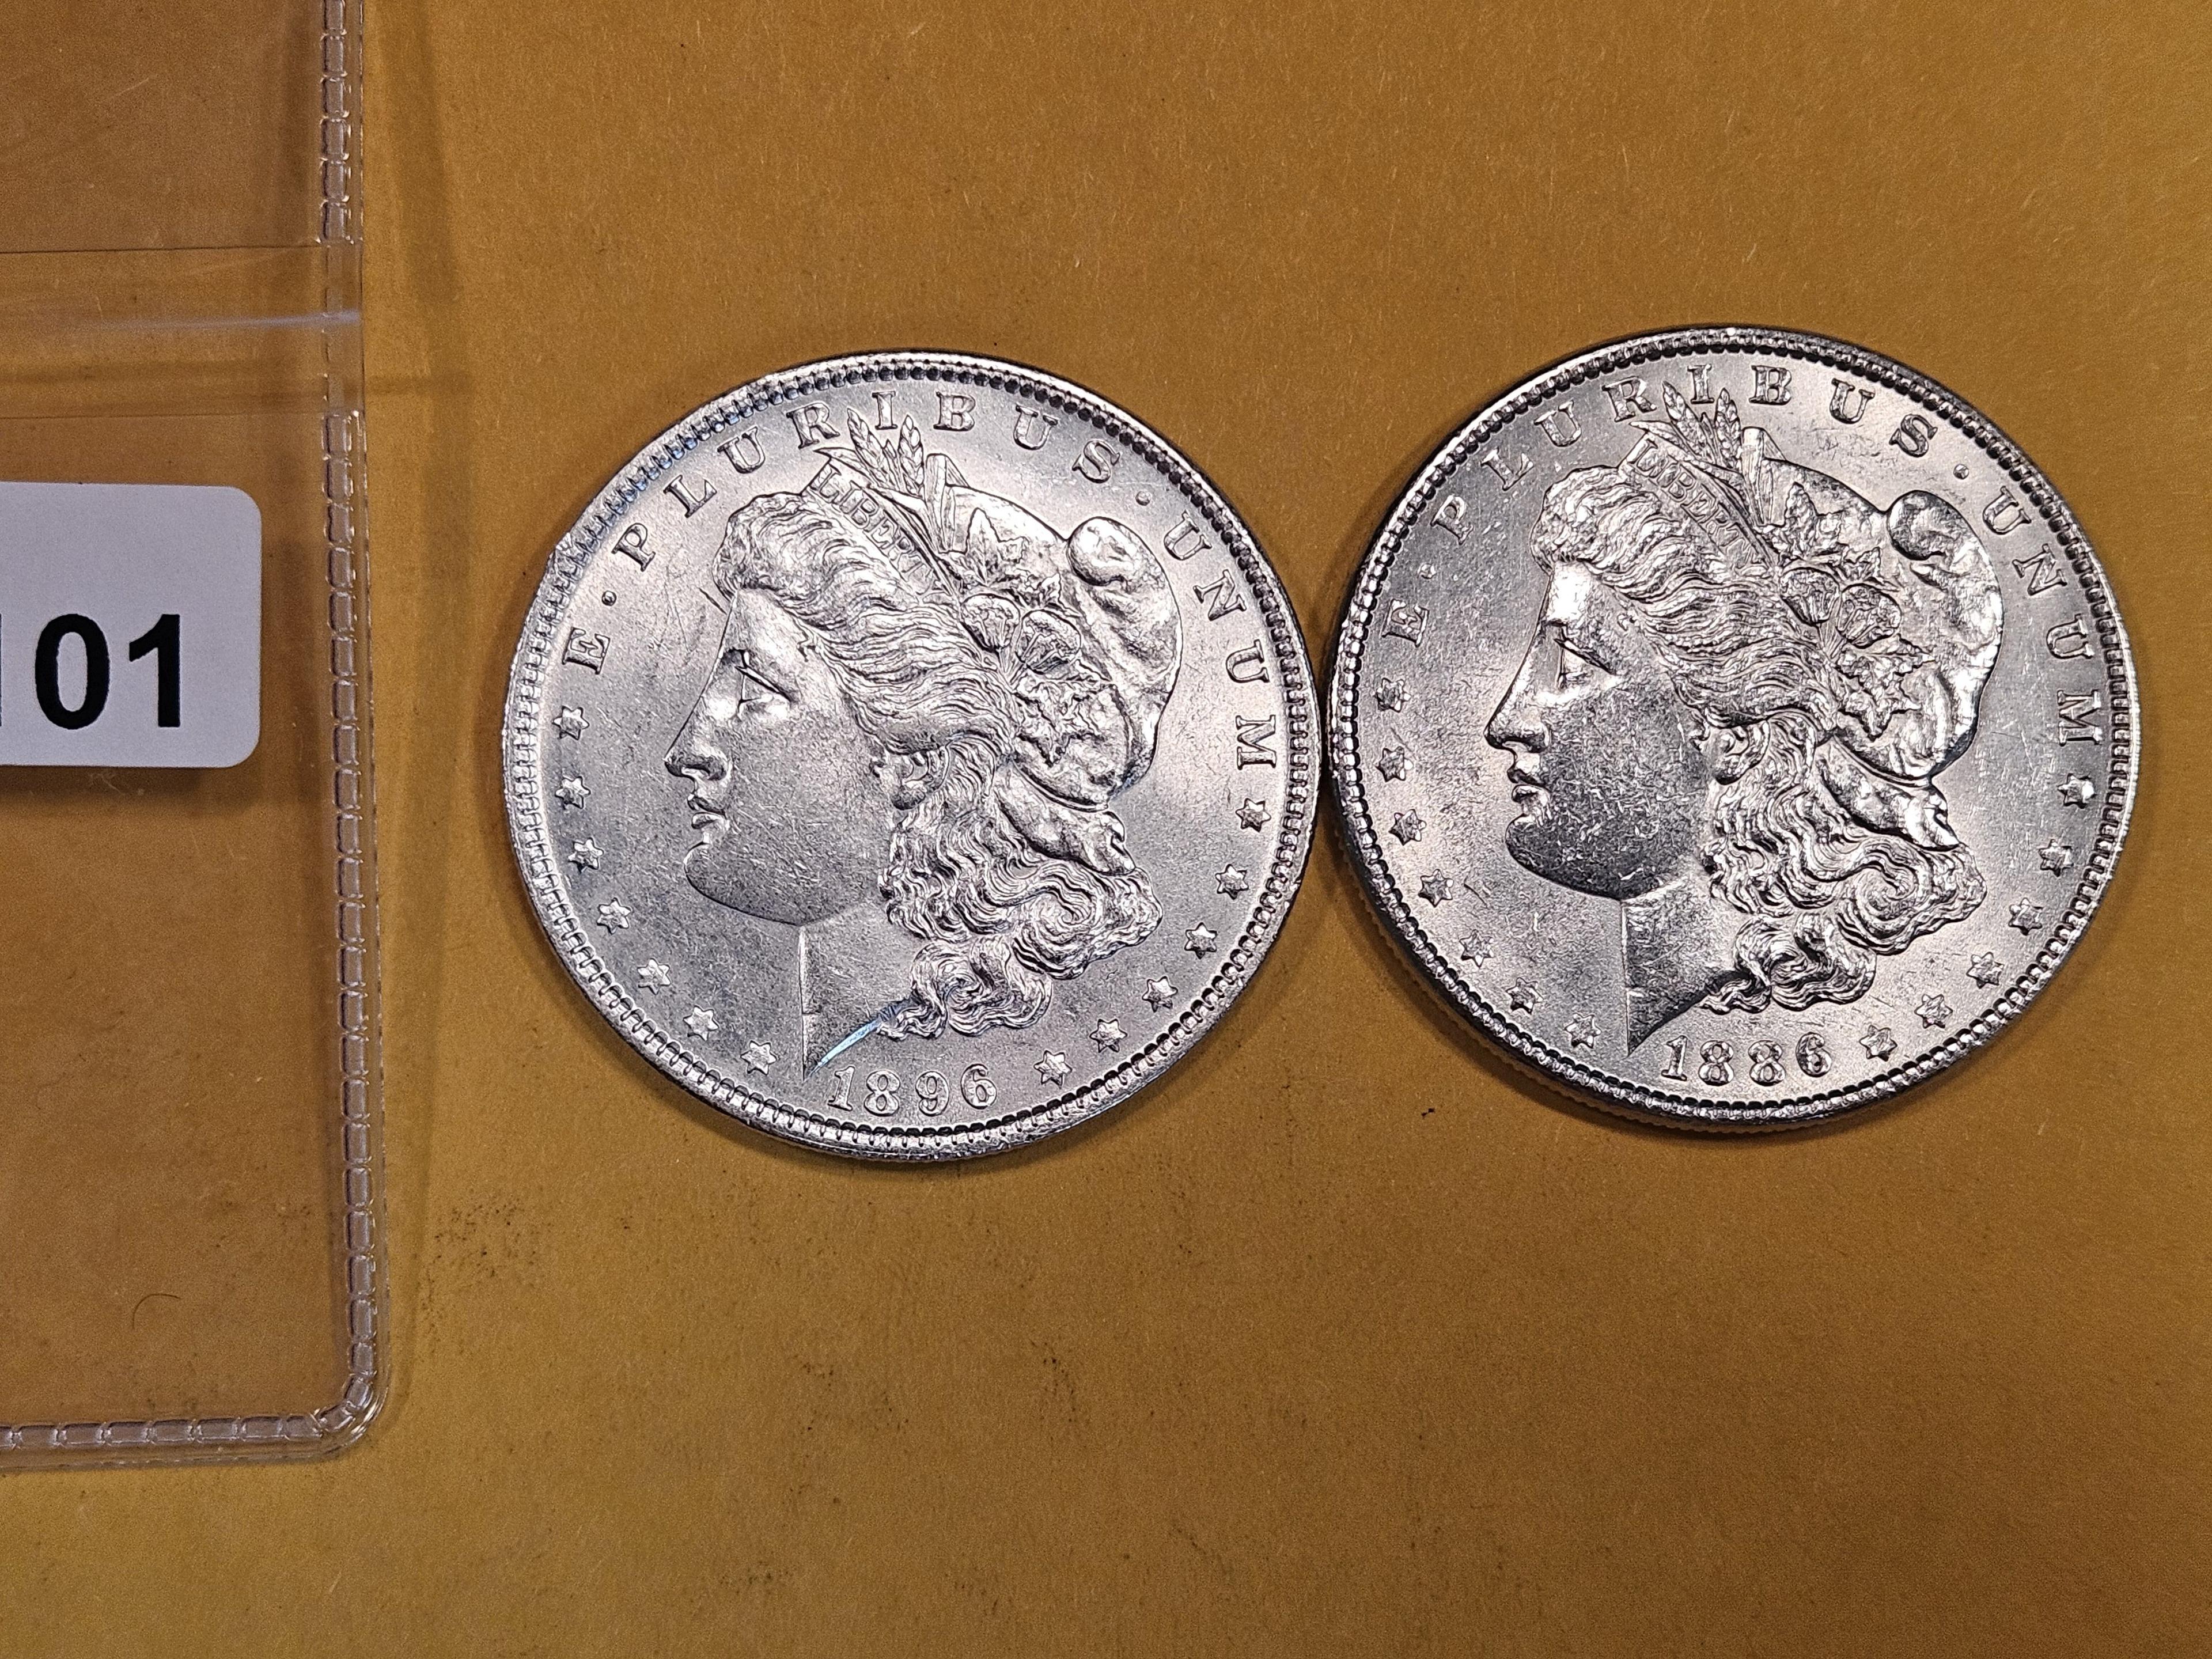 1896 and 1886 Morgan Dollars